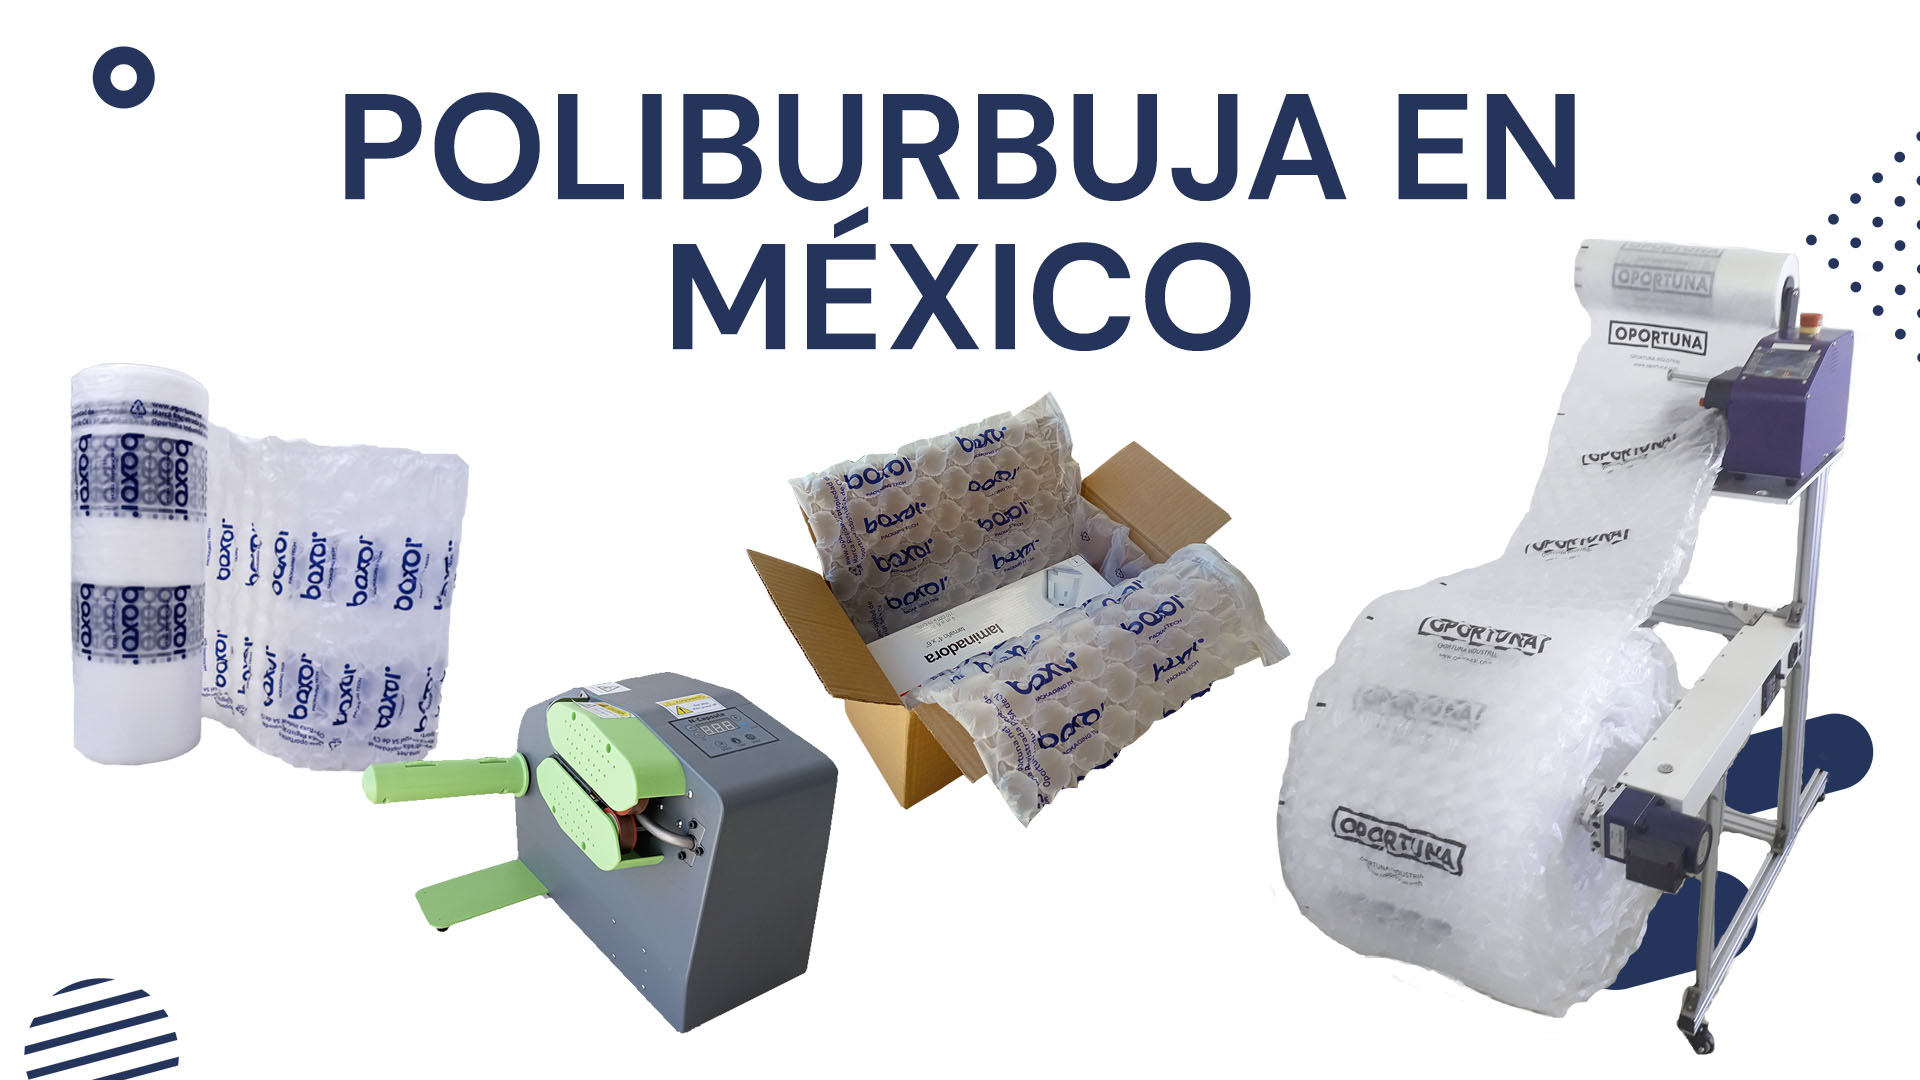 Poliburbuja en Mexico Poliburbuja en Mexico y cuáles son sus usos - Boxor